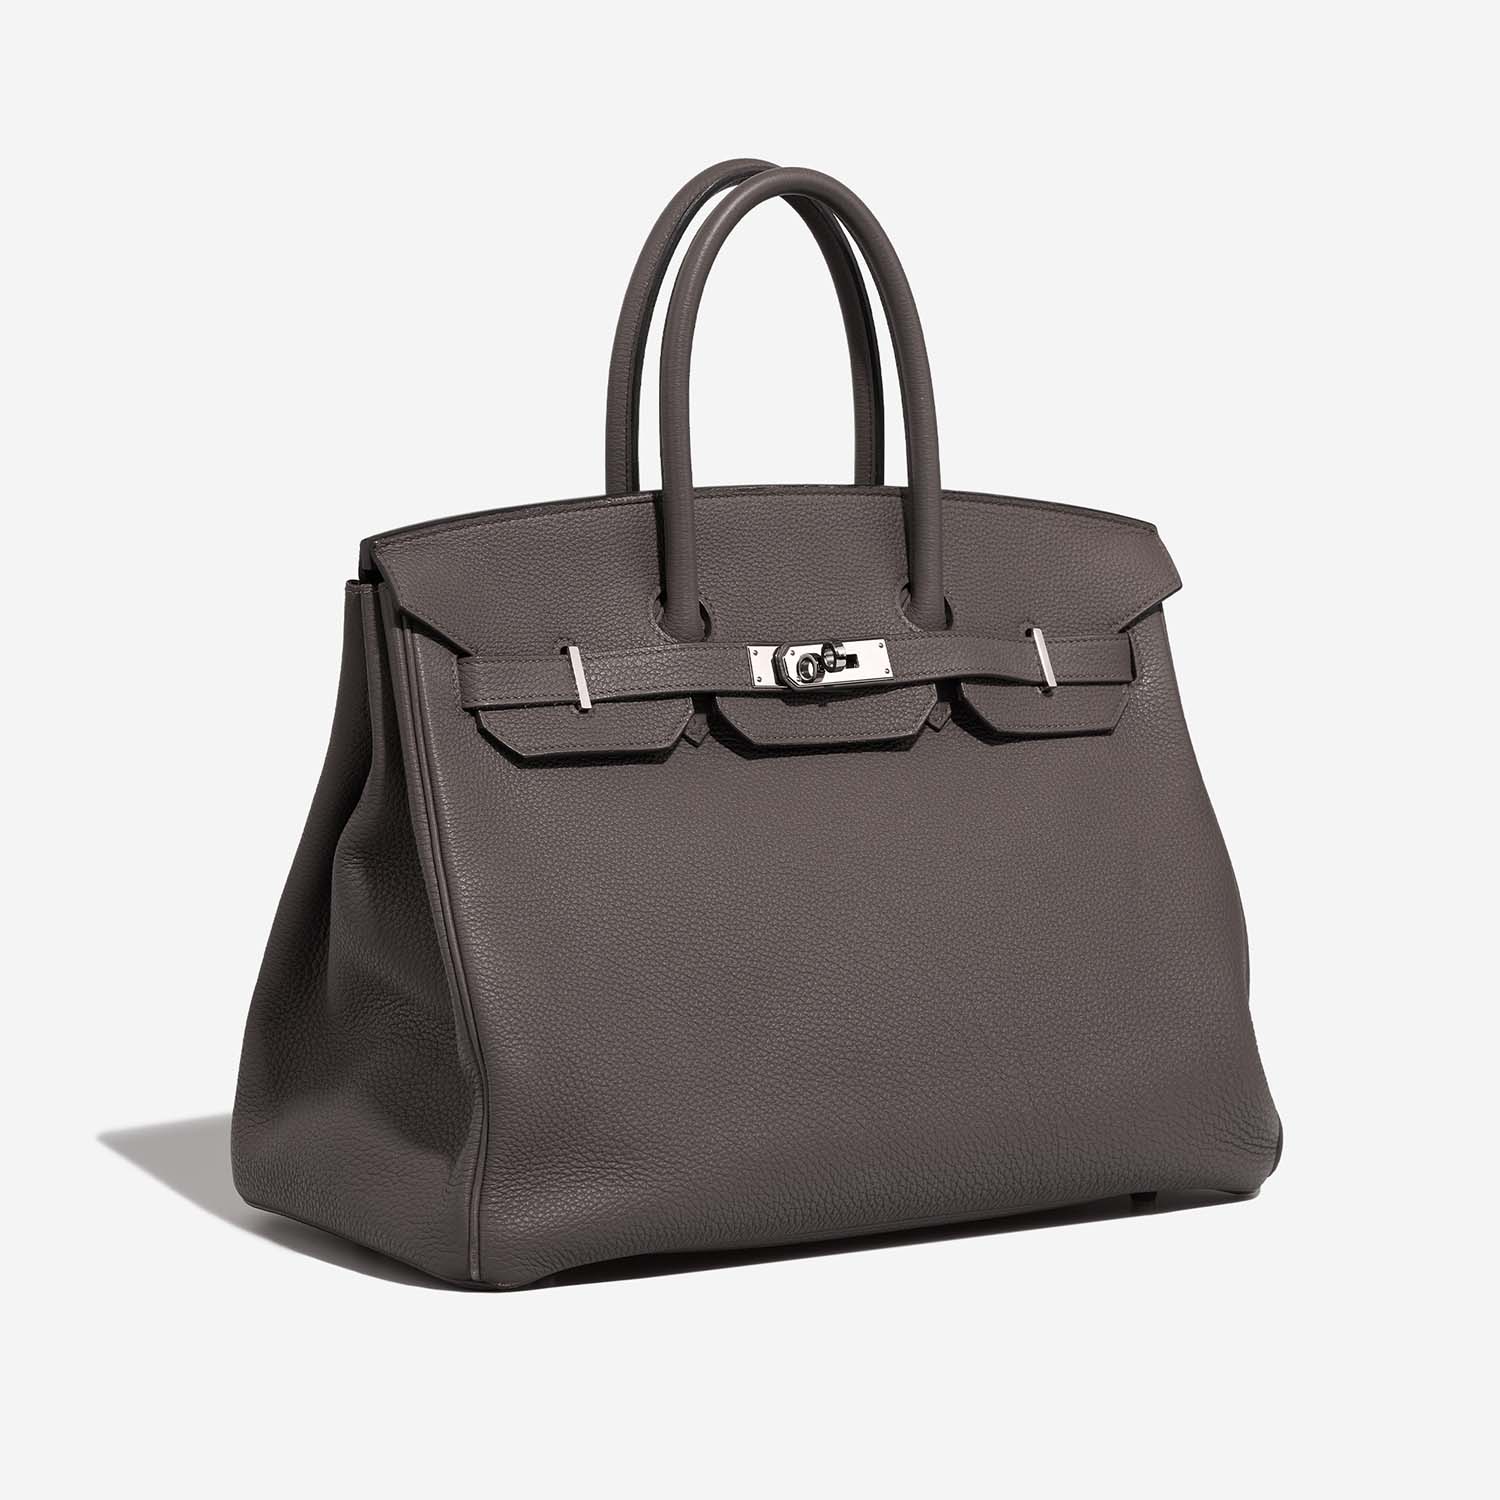 Hermès Birkin 35 Etain Side Front | Verkaufen Sie Ihre Designer-Tasche auf Saclab.com